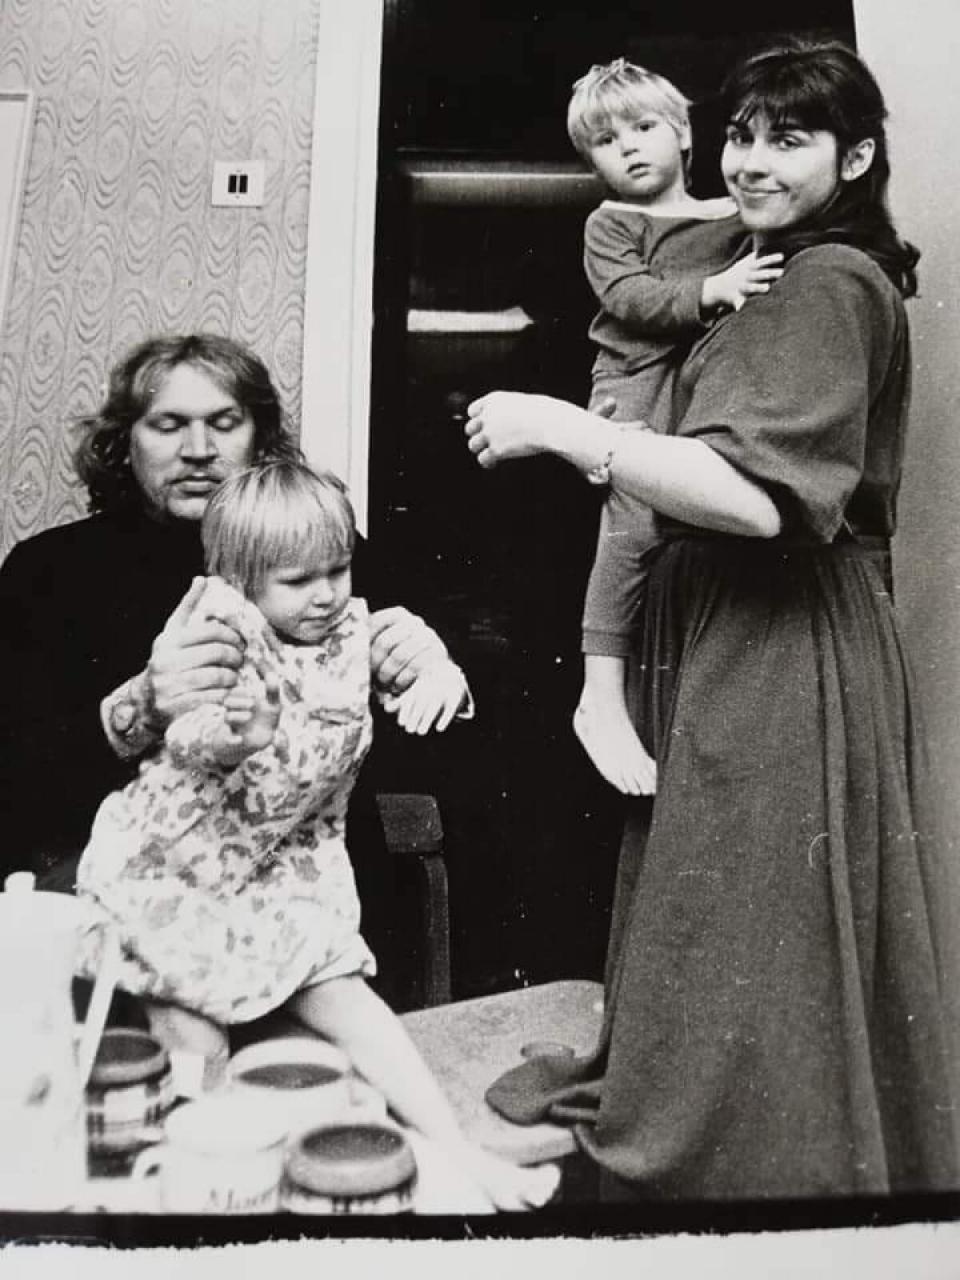 KAKSIKUTEGA Mart ja Sirje Helme kaksikute Maarja ja Martiniga 1979. aastal. Nii nagu pildil, on Martin olnud ka hilisemas eas emaga lähedasem kui isaga.